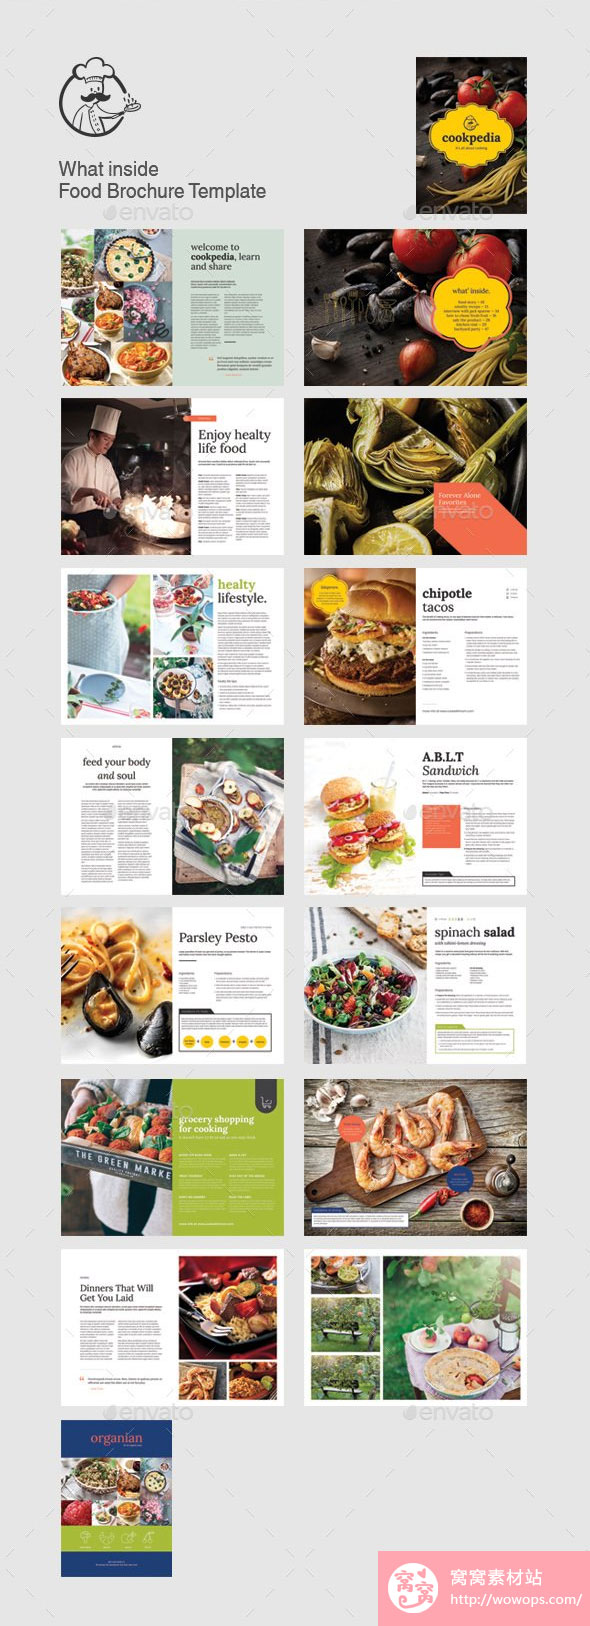 时尚美食食品宣传册画册设计5